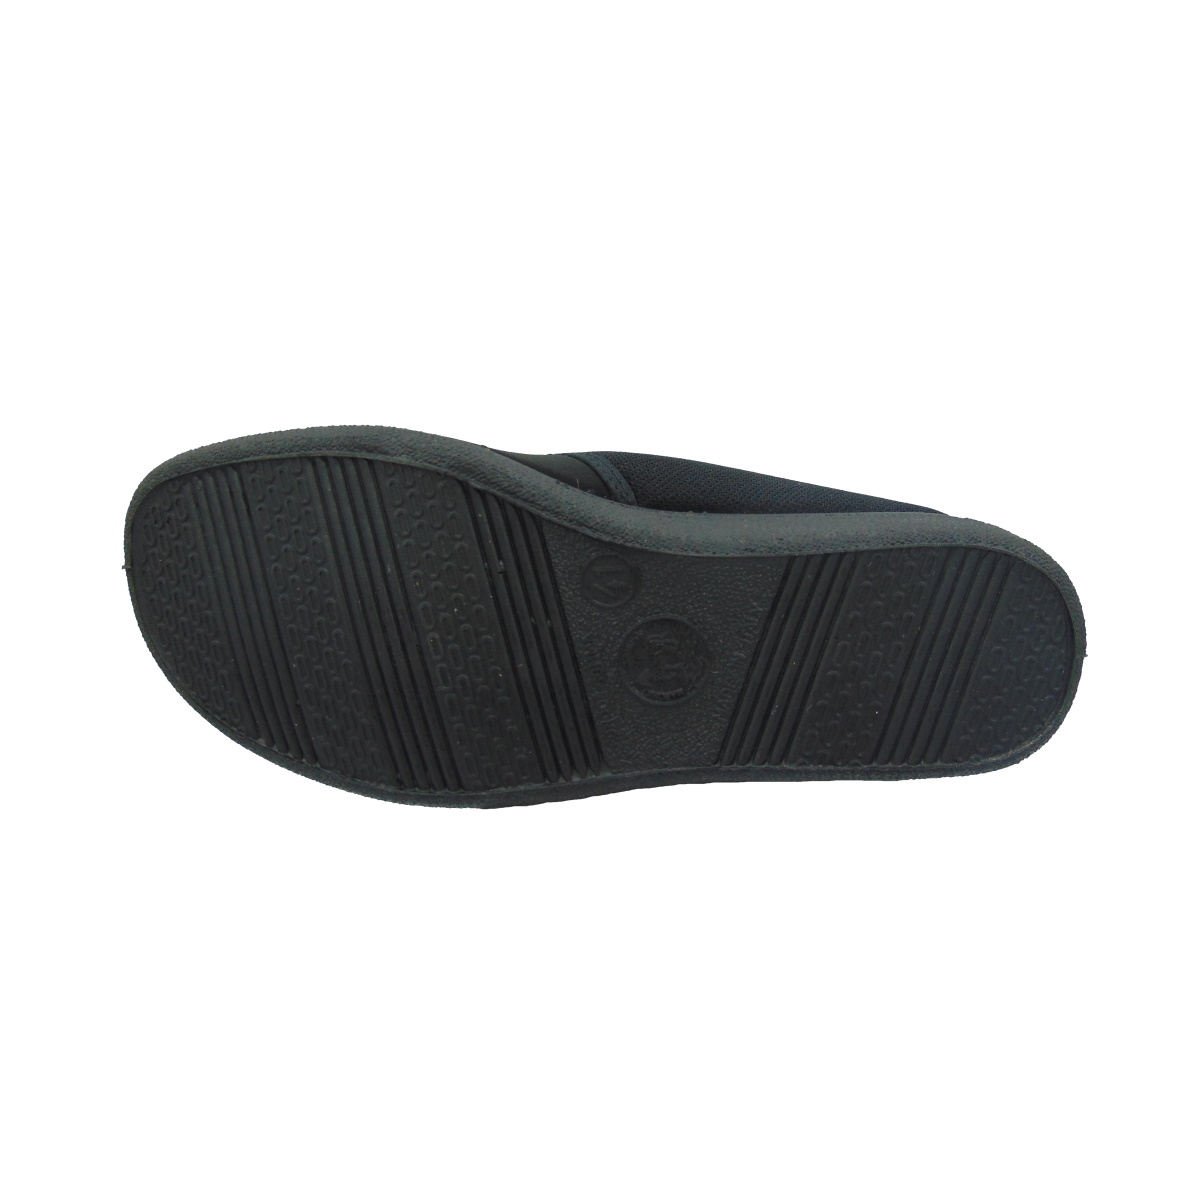 Pantofola Uomo elasticizzata con strappo Emanuela 986 nero (versione estiva)img_4